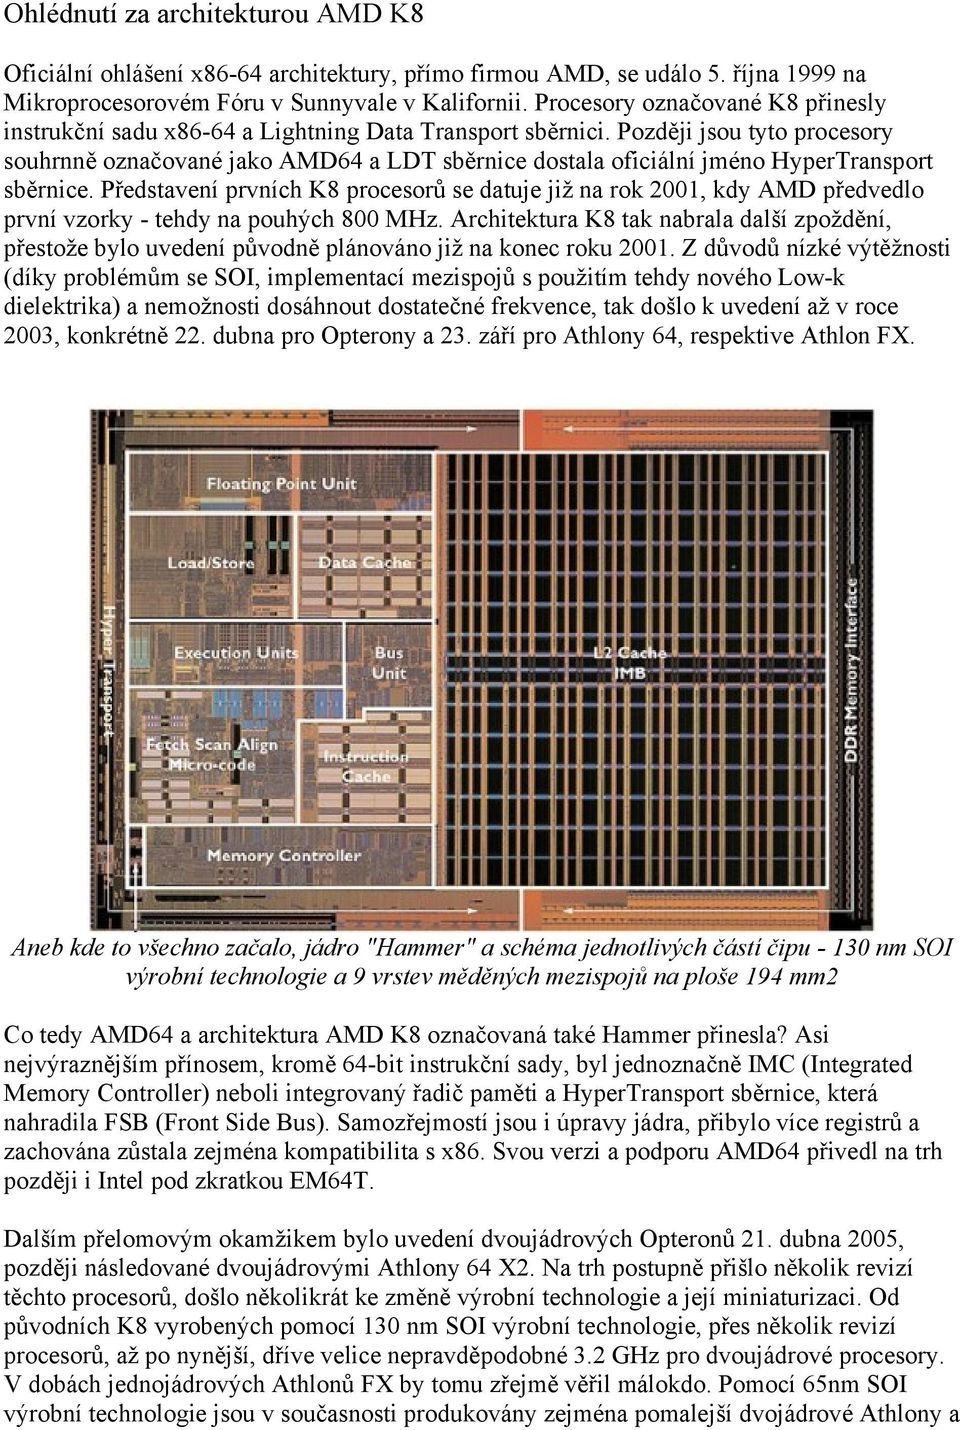 Později jsou tyto procesory souhrnně označované jako AMD64 a LDT sběrnice dostala oficiální jméno HyperTransport sběrnice.